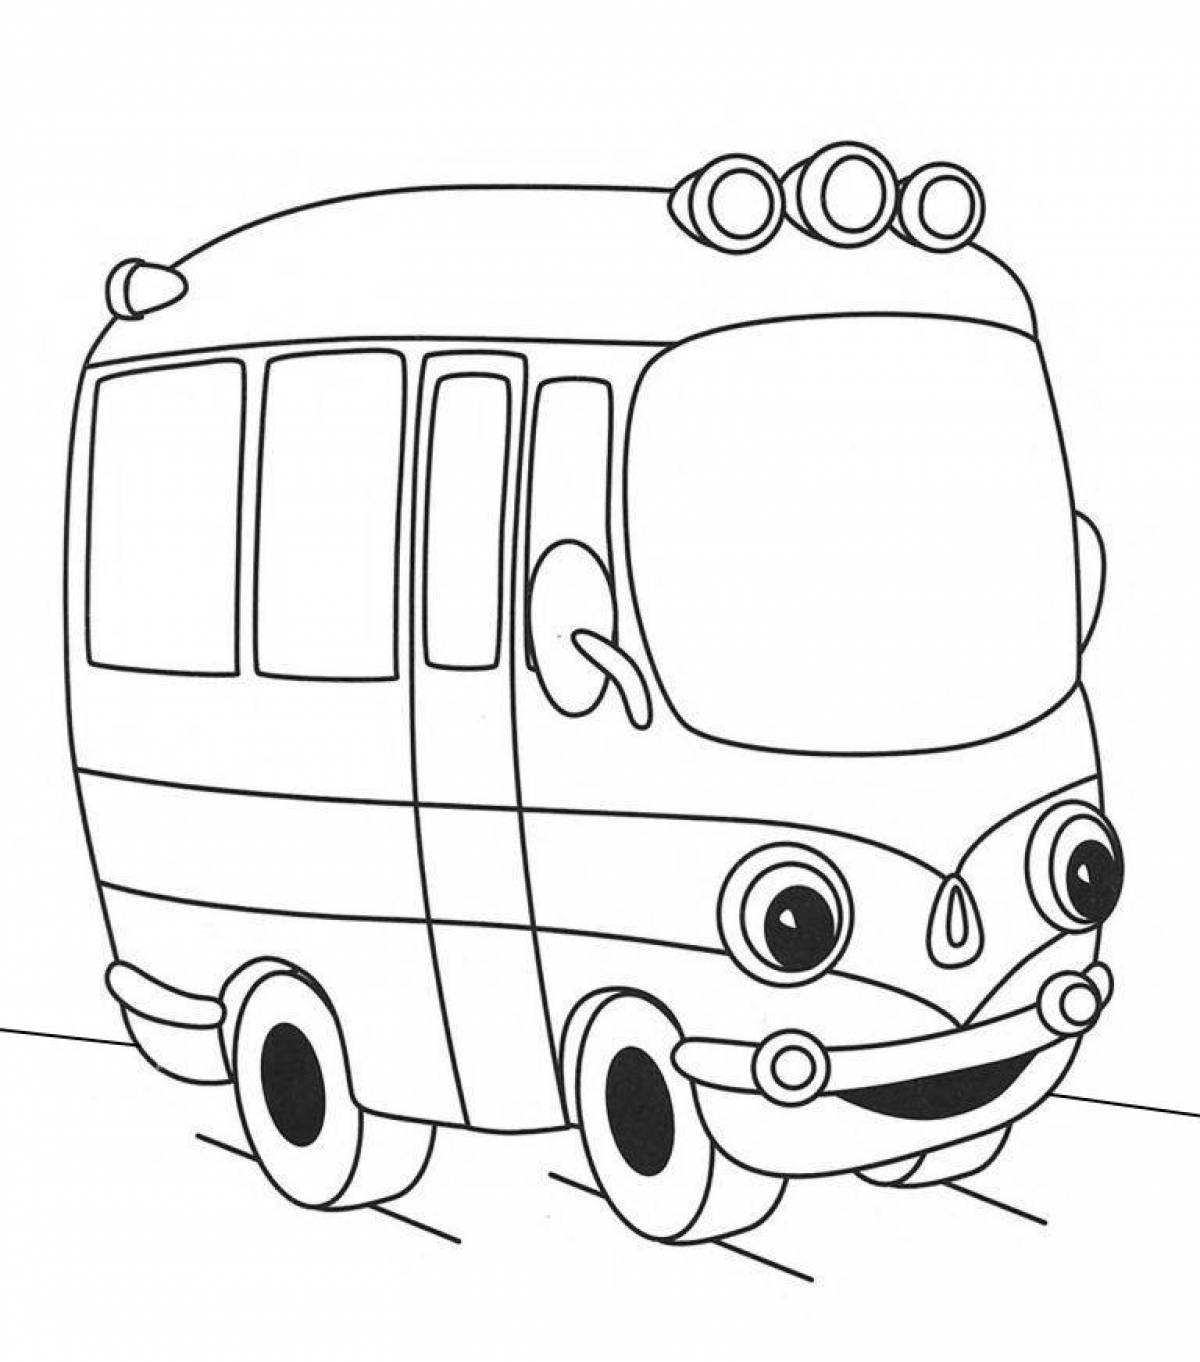 Веселая раскраска транспорта для детей 5-6 лет